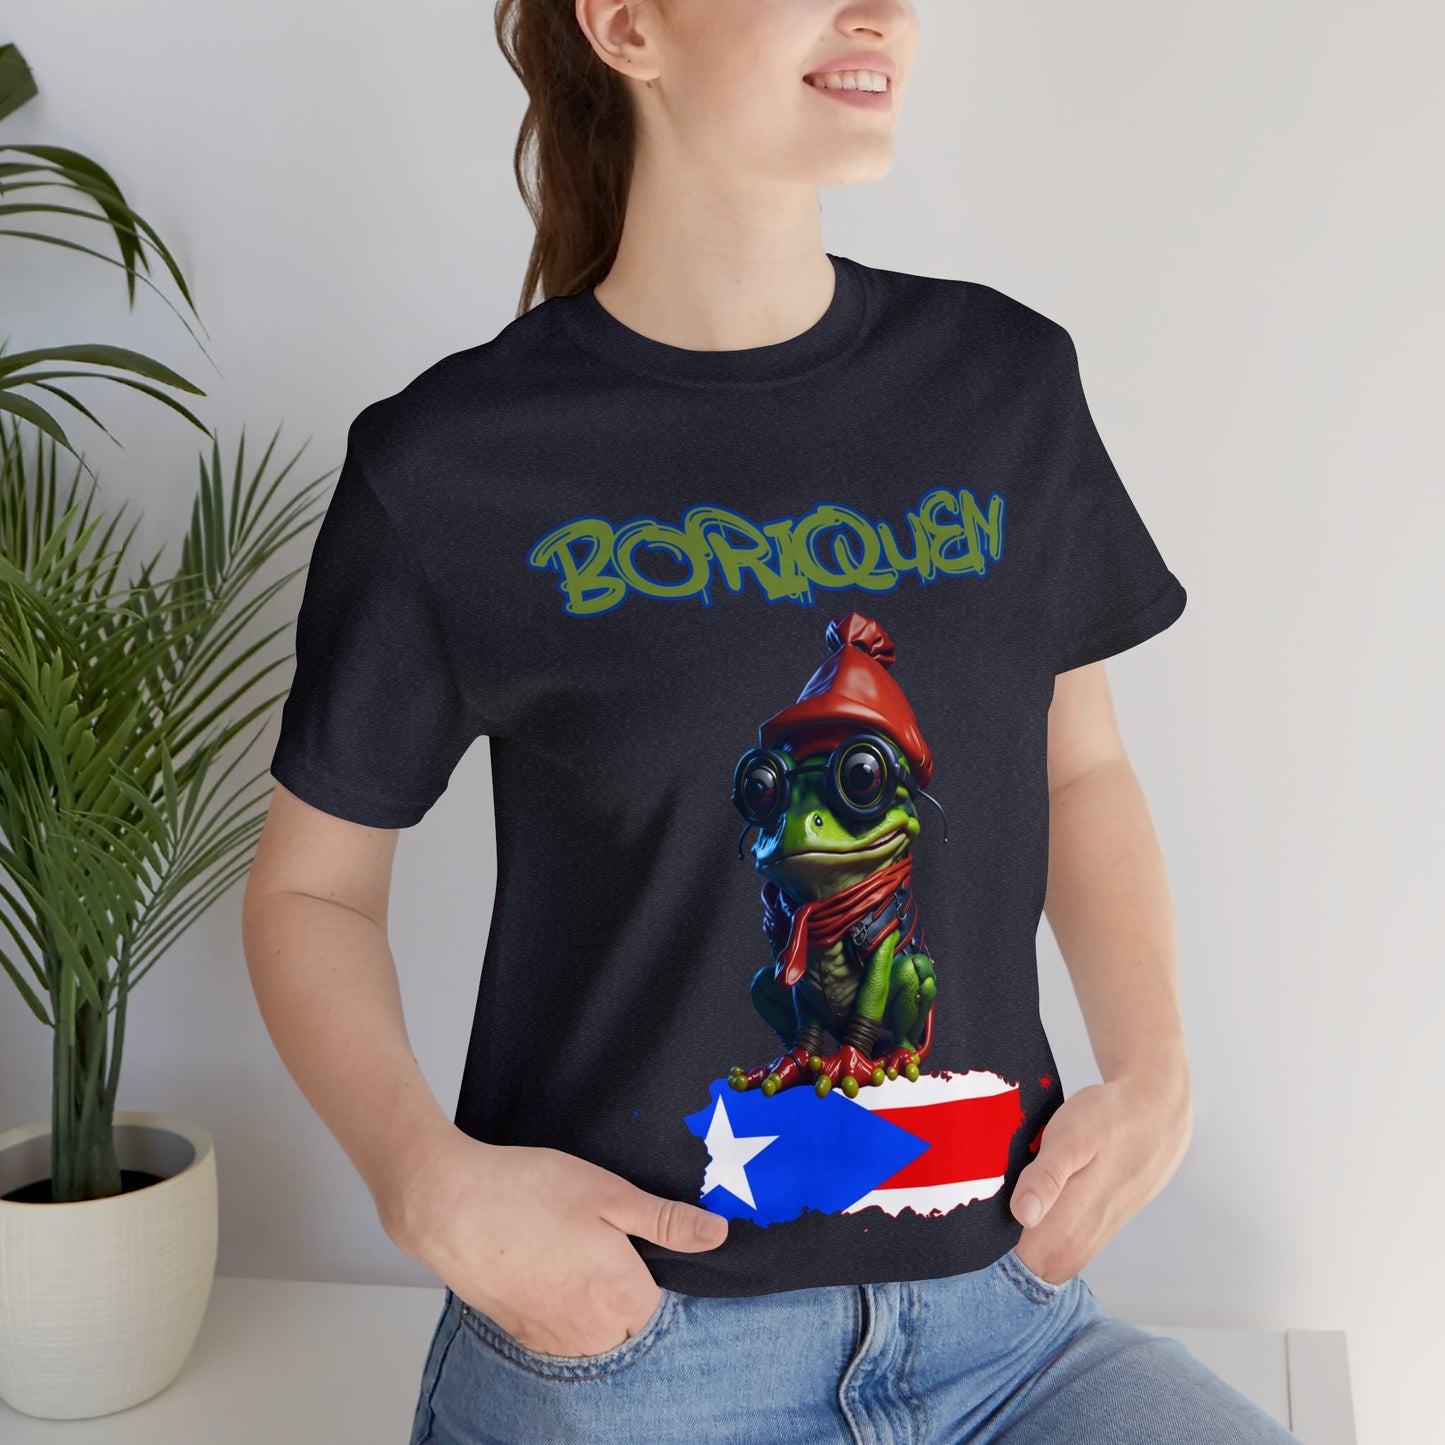 Bori Coqui | Puerto Rican Gift | HD | Boriquen | Unisex | Men's | Women's | Tee | T-Shirt